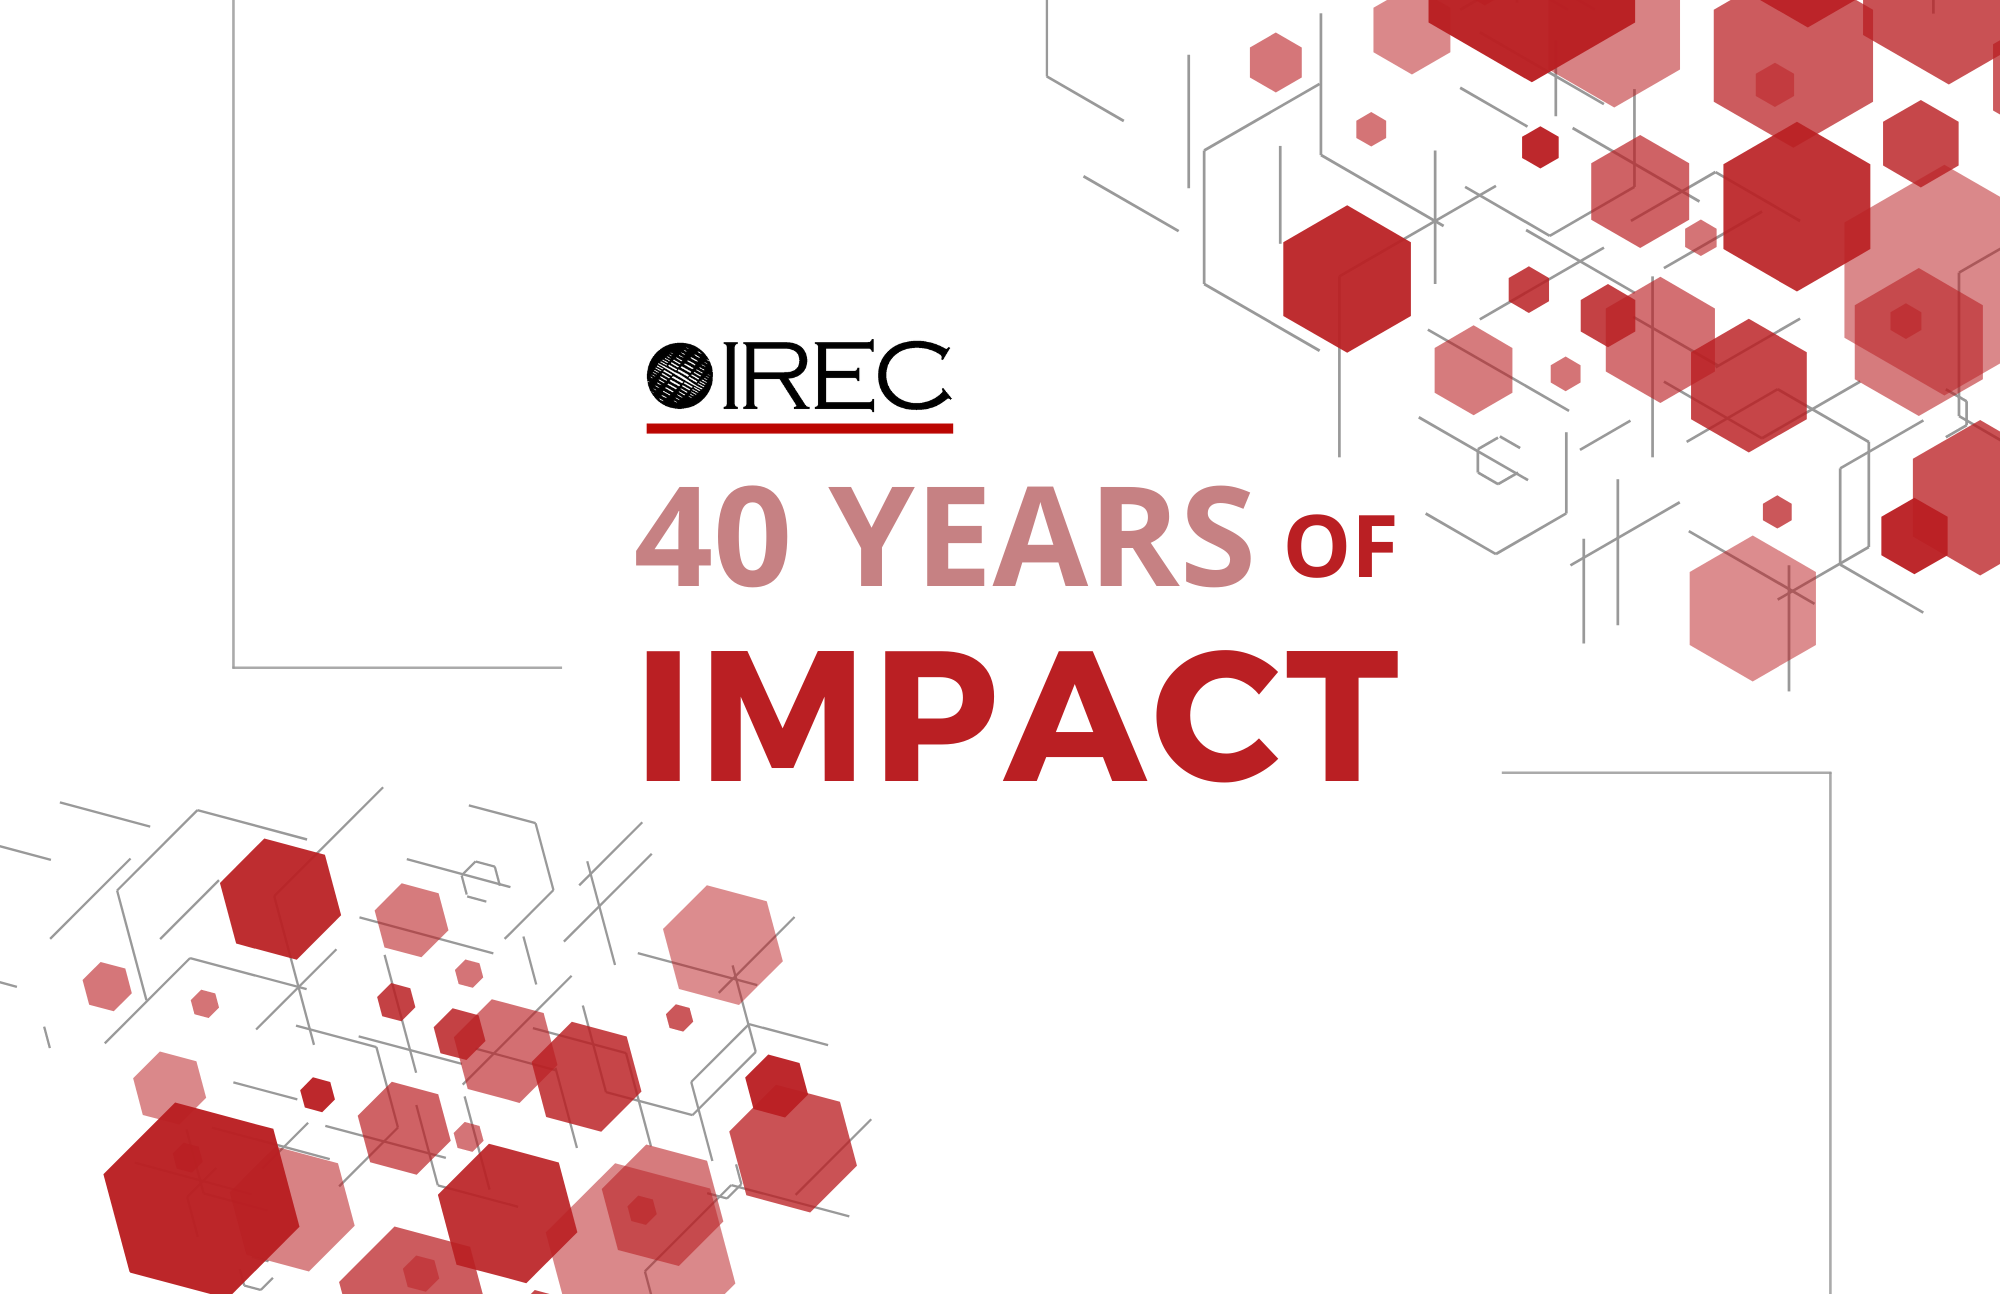 IREC’s 40 Years of Impact